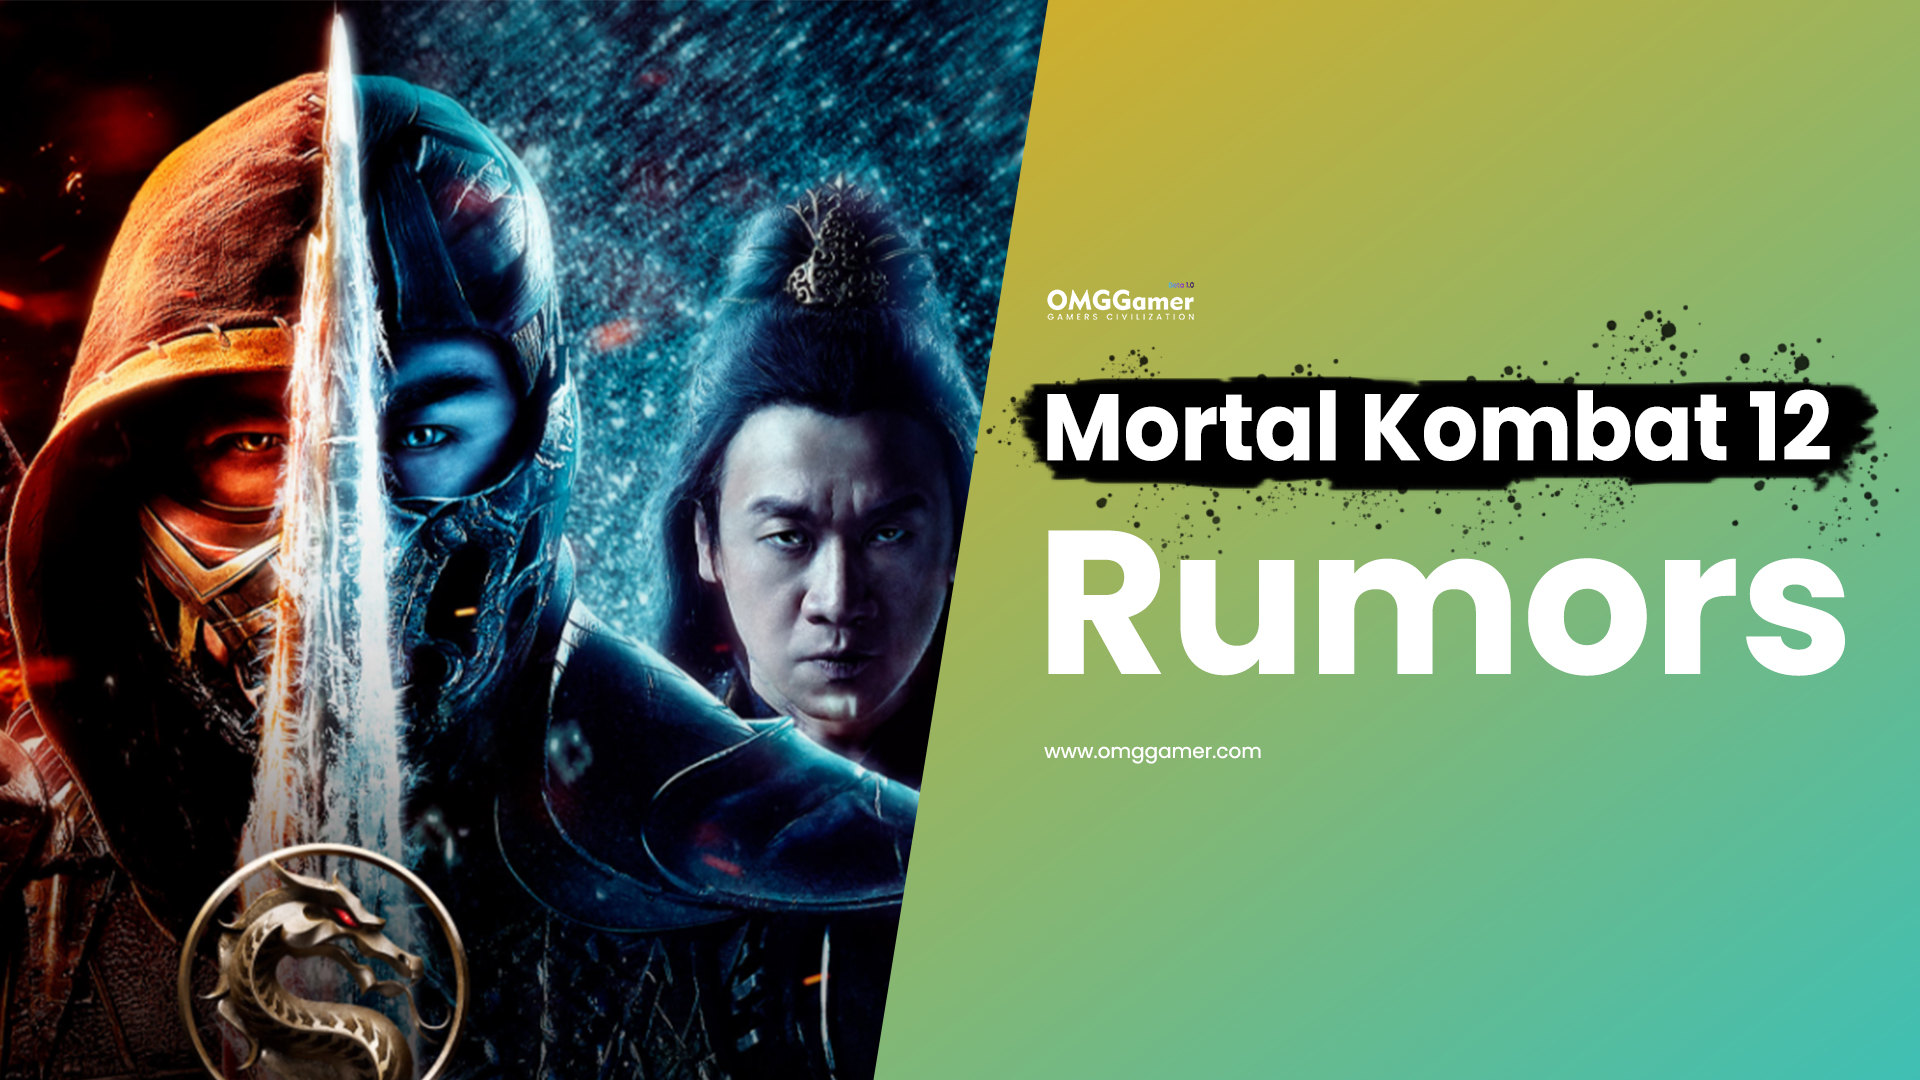 Mortal Kombat 12 Rumors